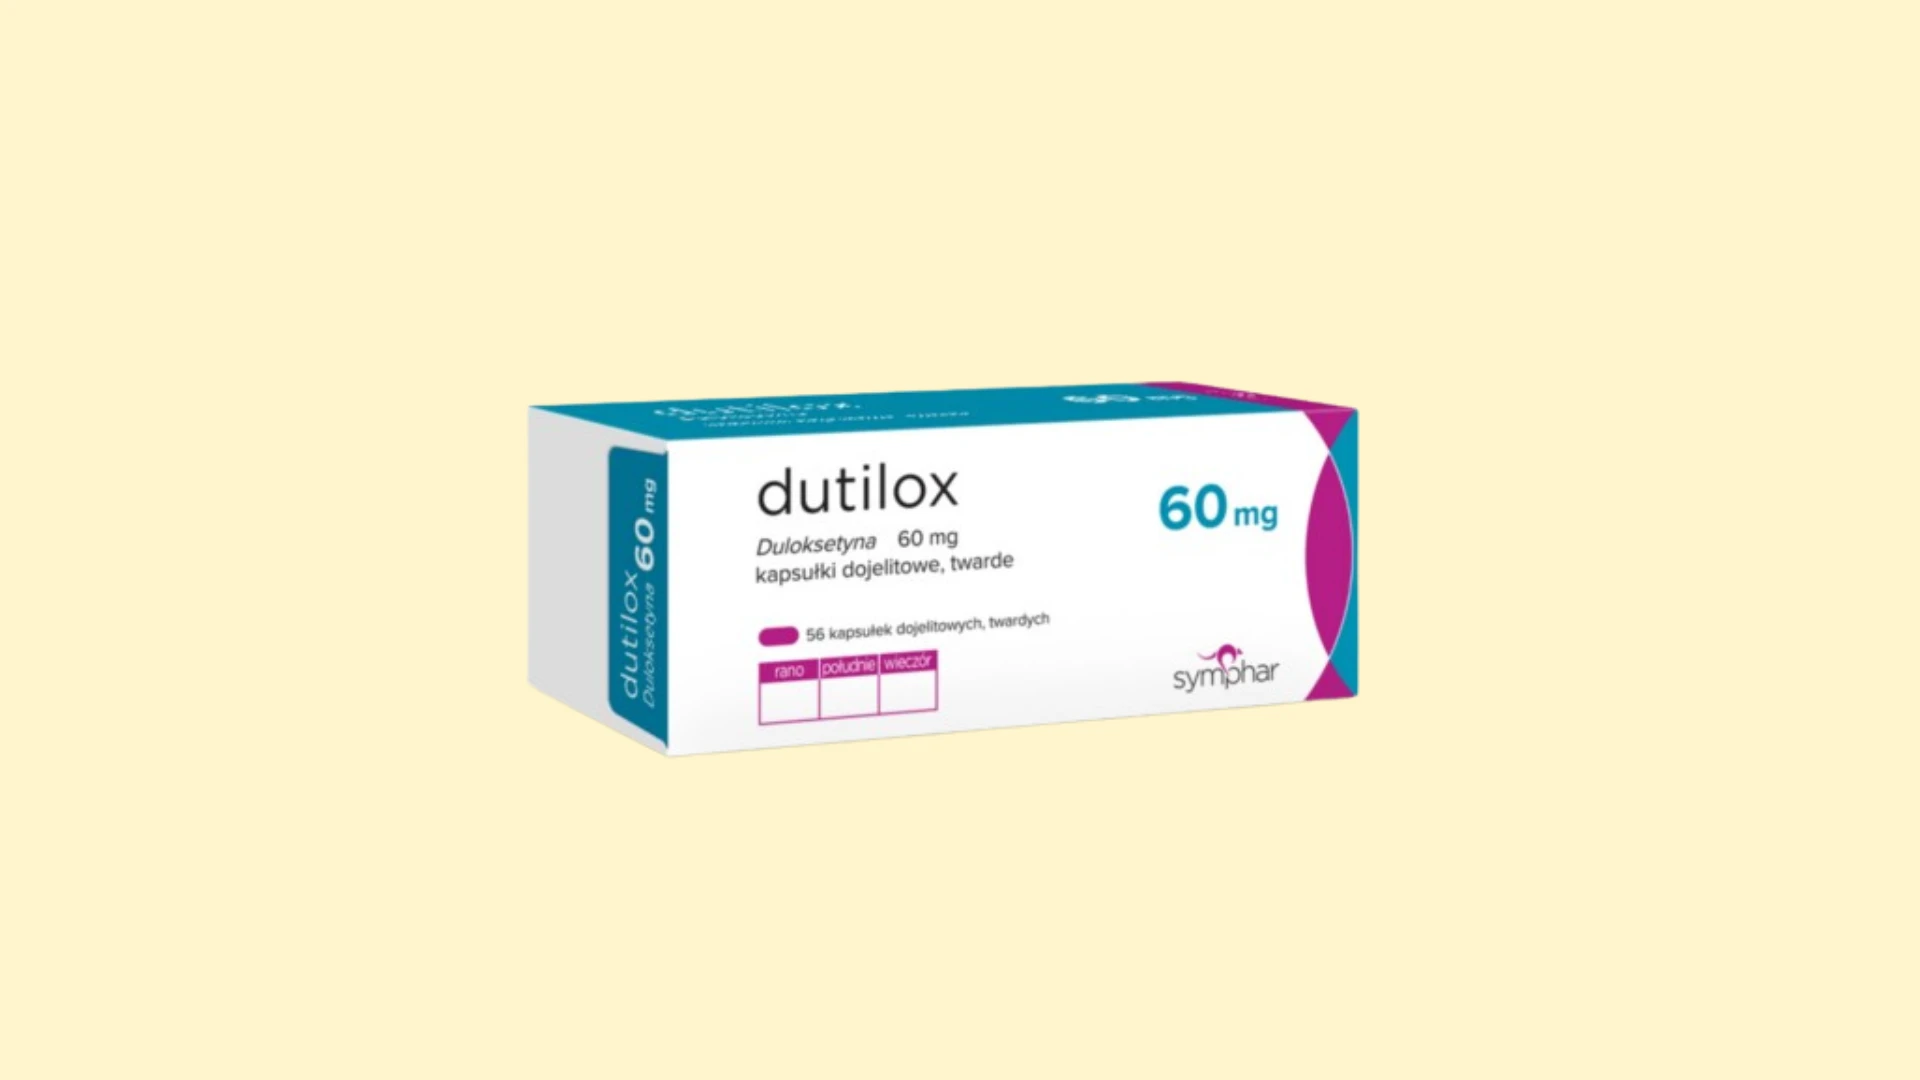 Dutilox 60 mg - Recepta online - e-Recepta z konsultacją | cena, dawkowanie, przeciwwskazania